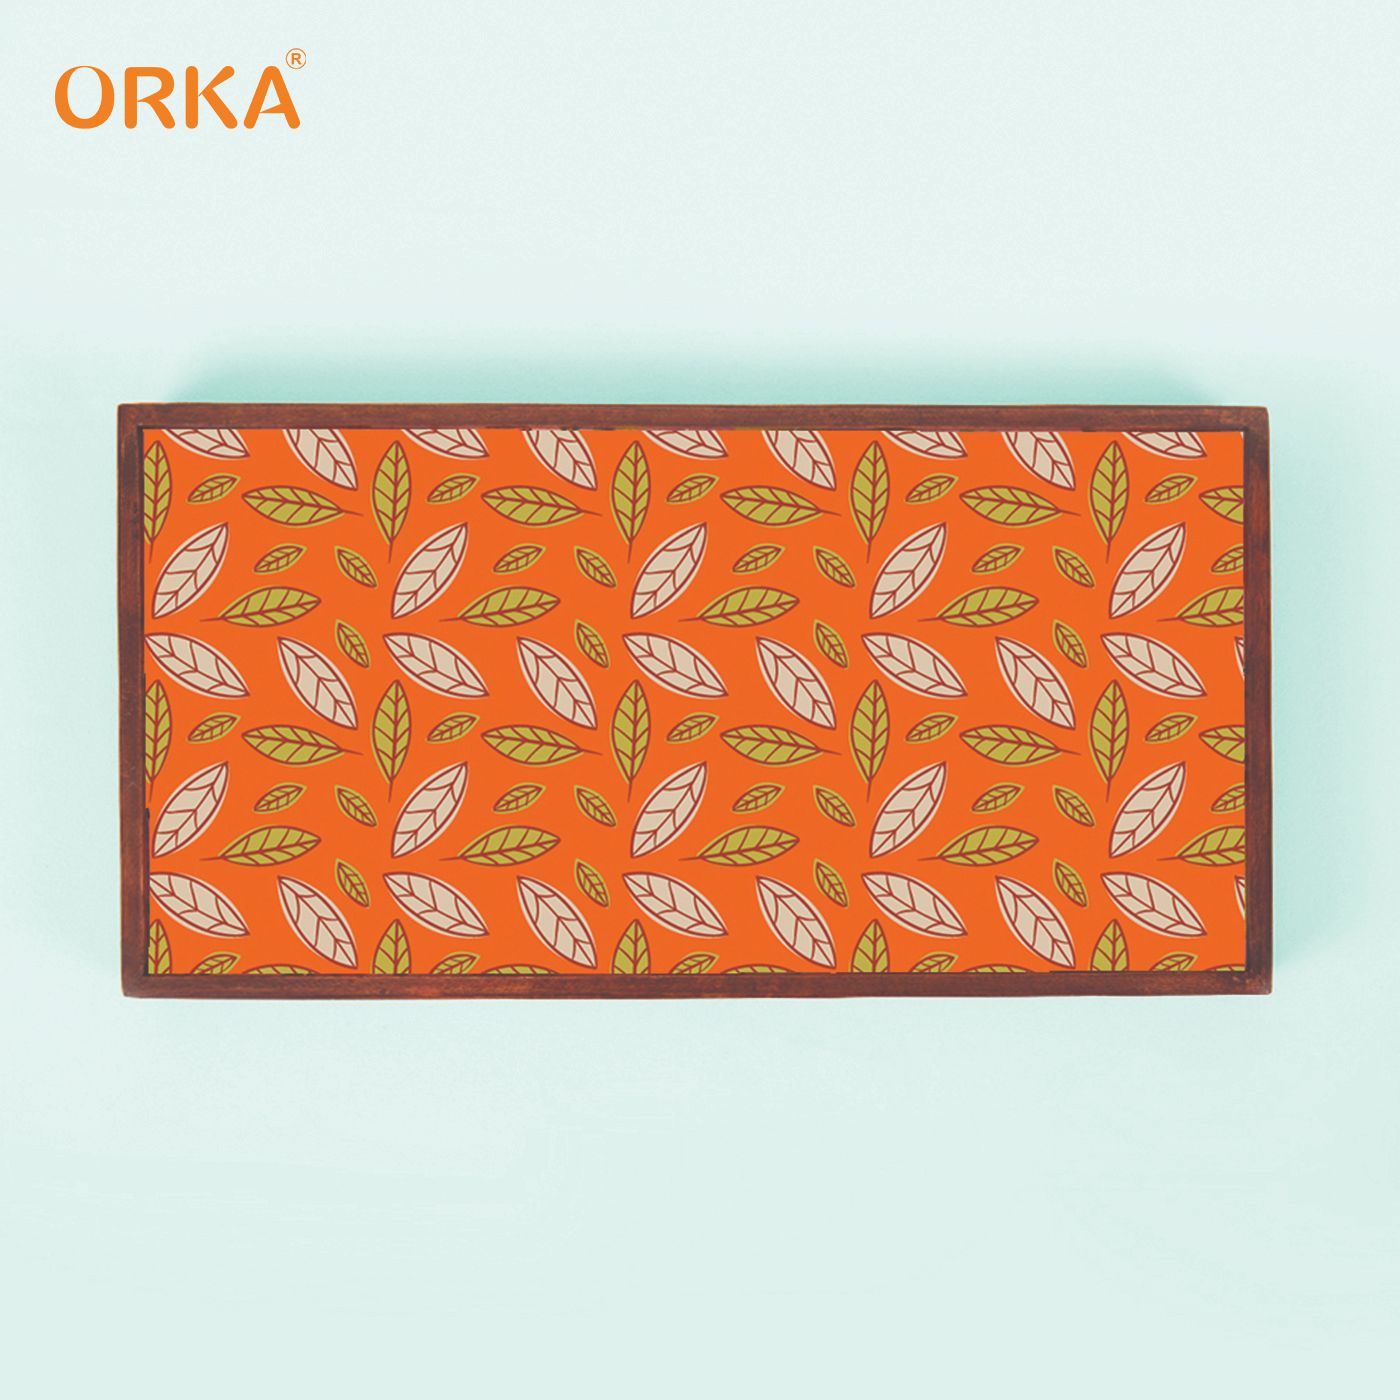 ORKA Foliole Foldable Pine Wood Breakfast Table (Orange)  